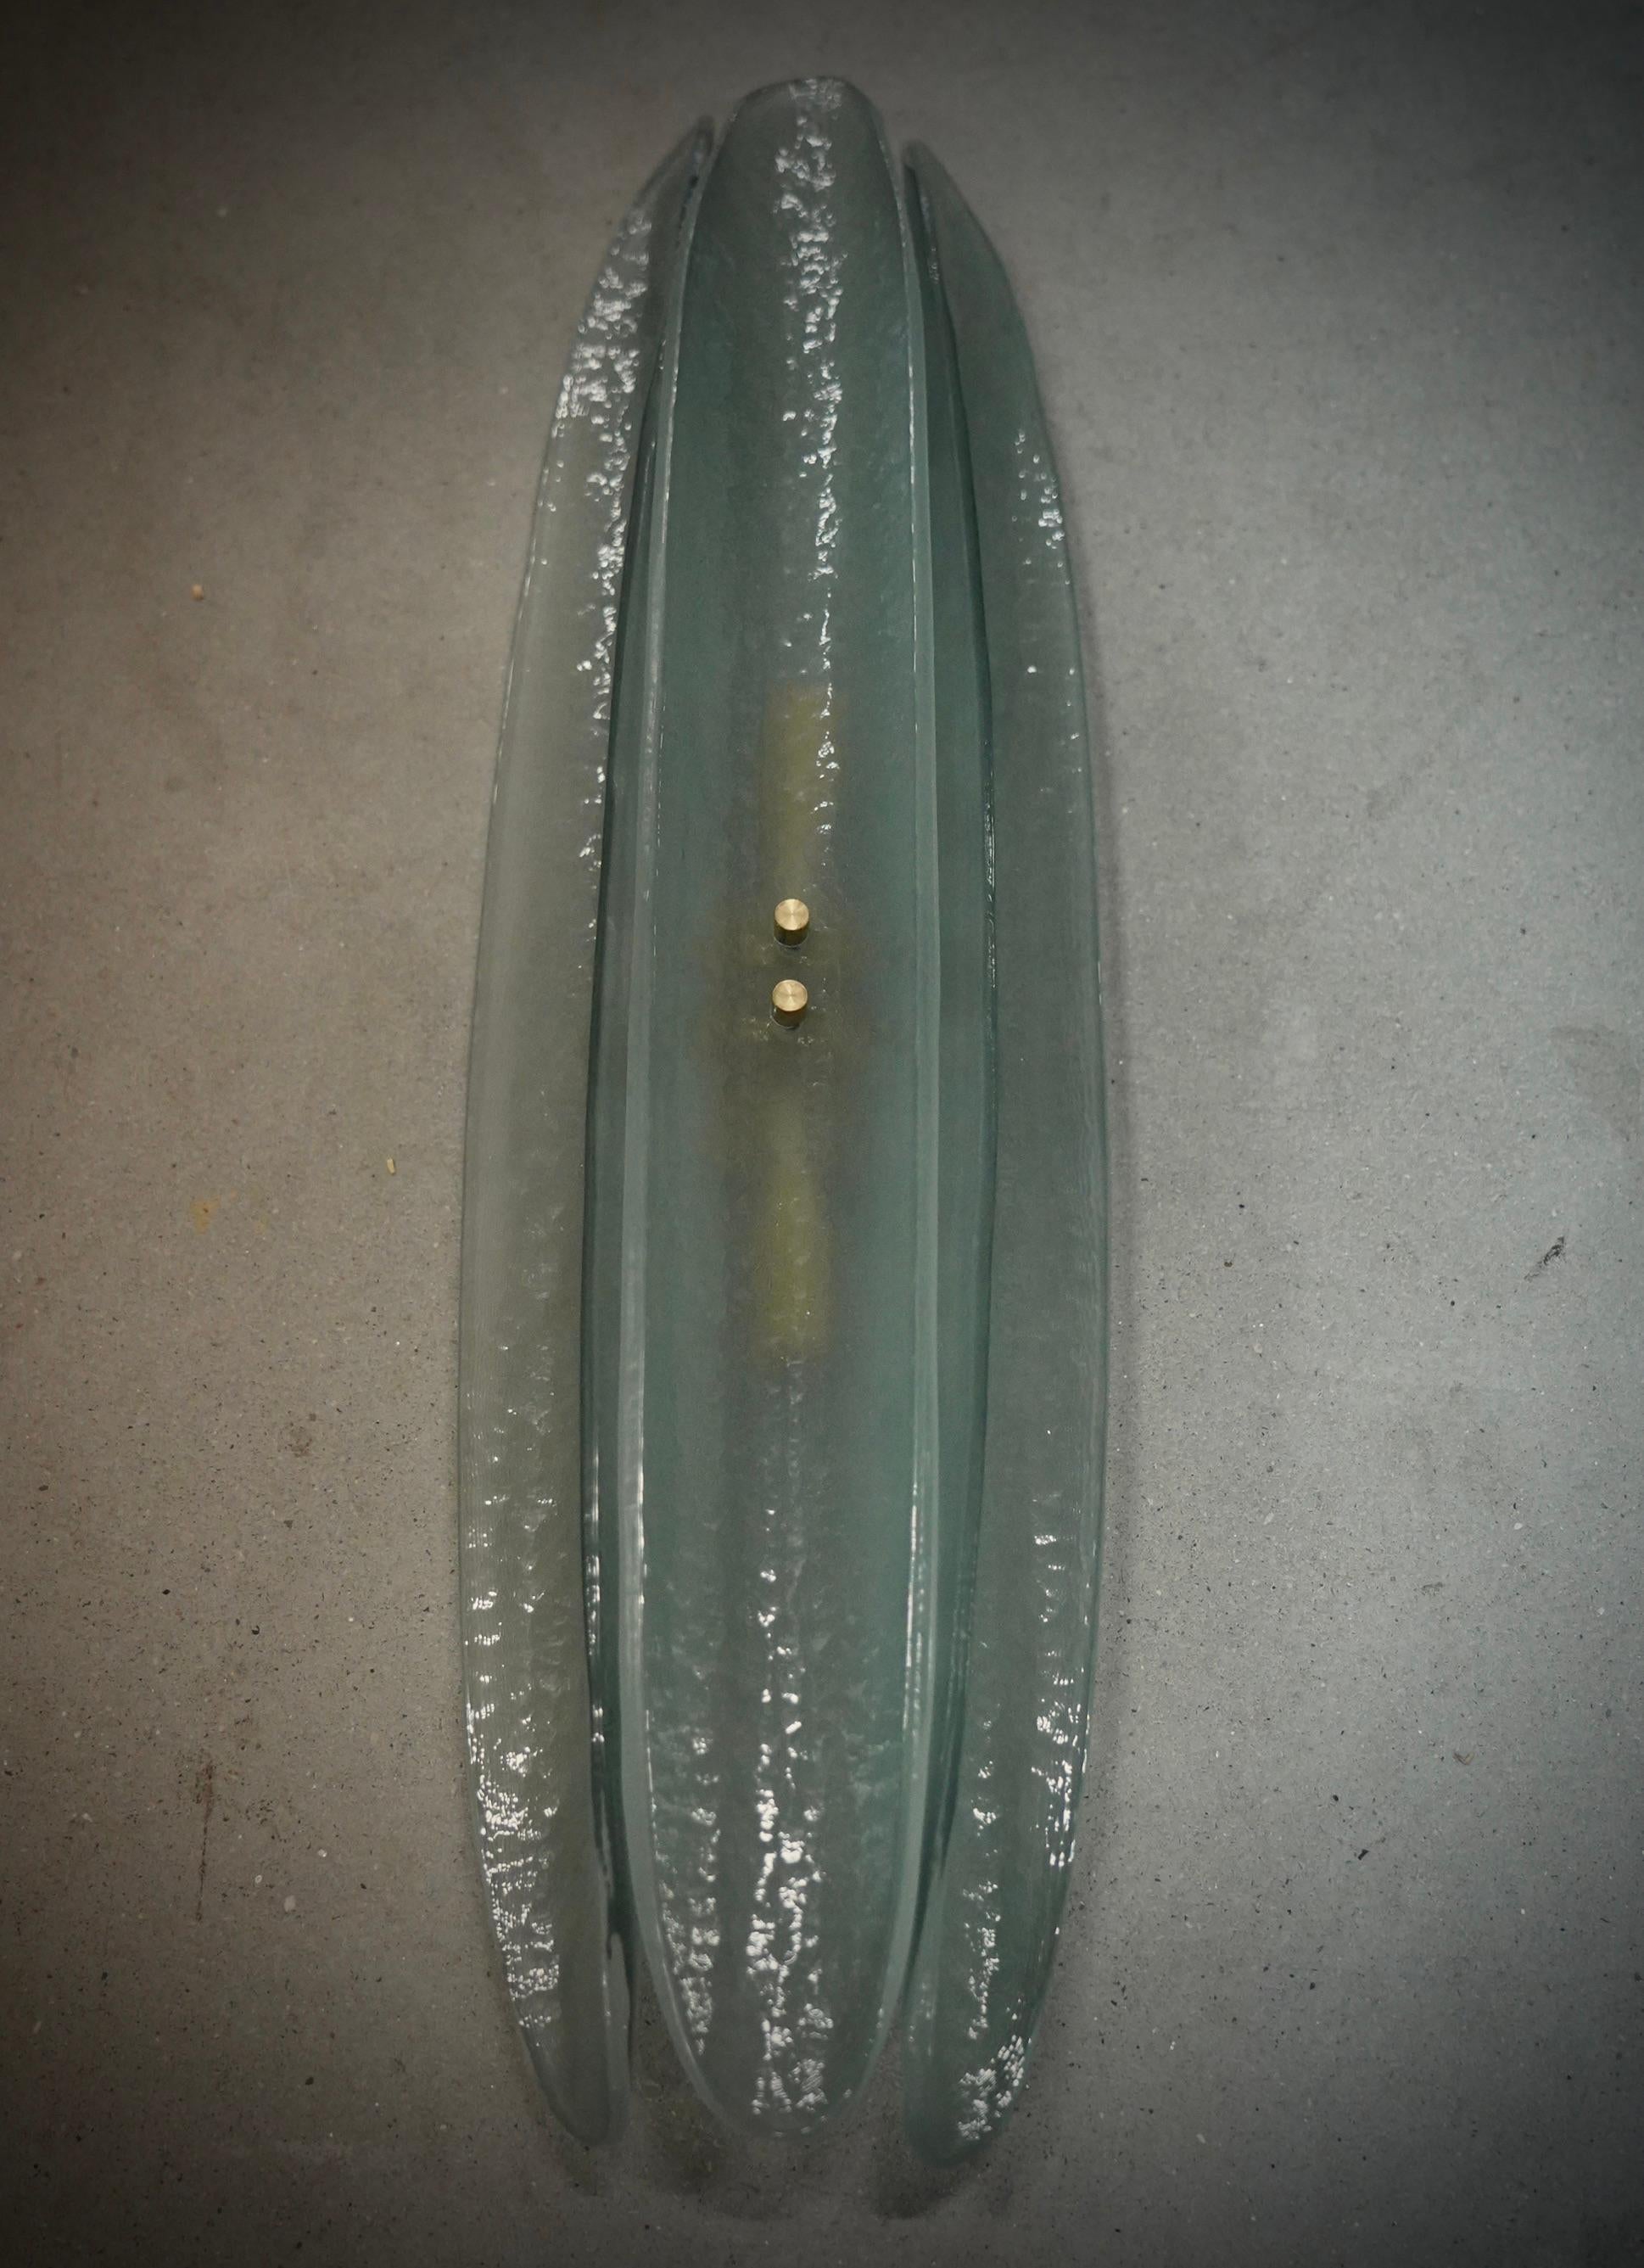 Applique en verre de Murano très originale avec un design-Light très allongé de la demi-coquille de verre et une couleur vert clair unique.

L'applique est constituée d'une structure métallique de couleur or à laquelle ont été fixées trois